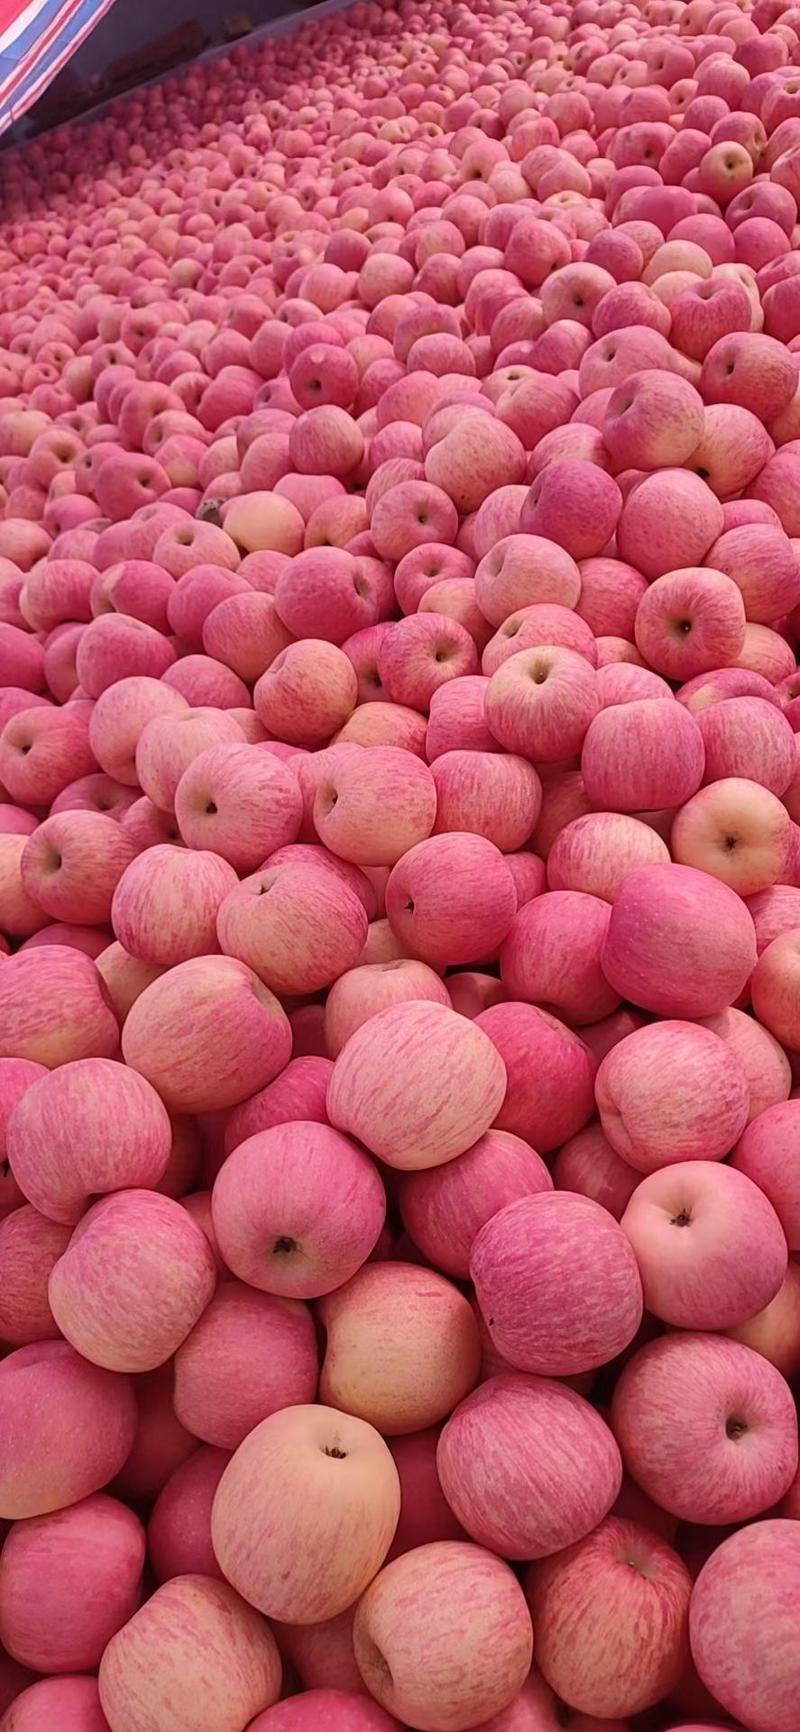 条纹红富士苹果，口感脆甜精品纸袋红富士苹果一手货源